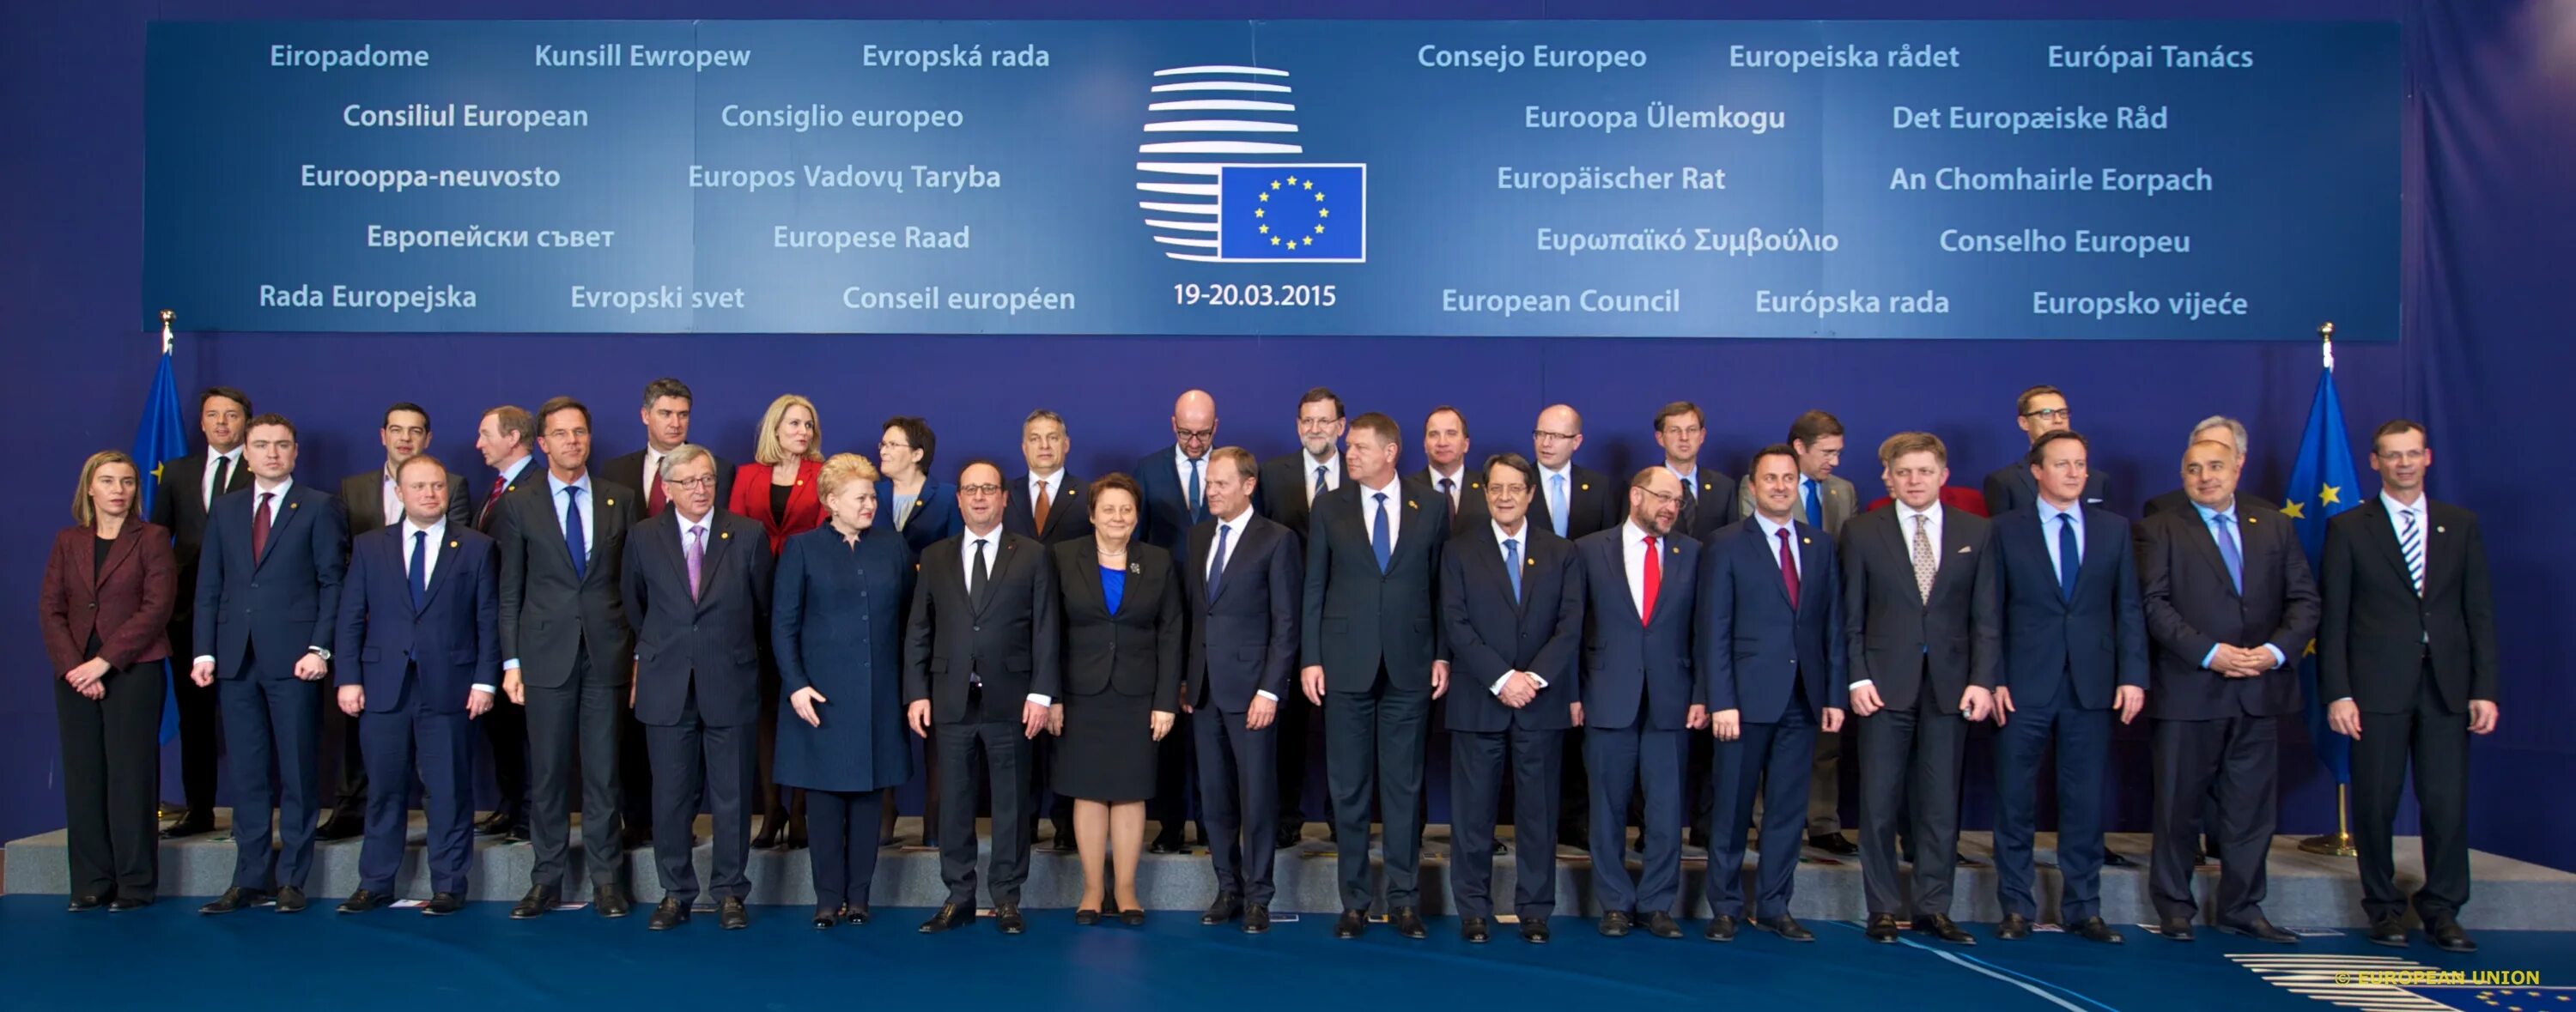 Eu council. Council of the European Union. Контроль Европейский Союз. Стратегические интересы Европейский Союз. Европейский Союз высокие технологии.